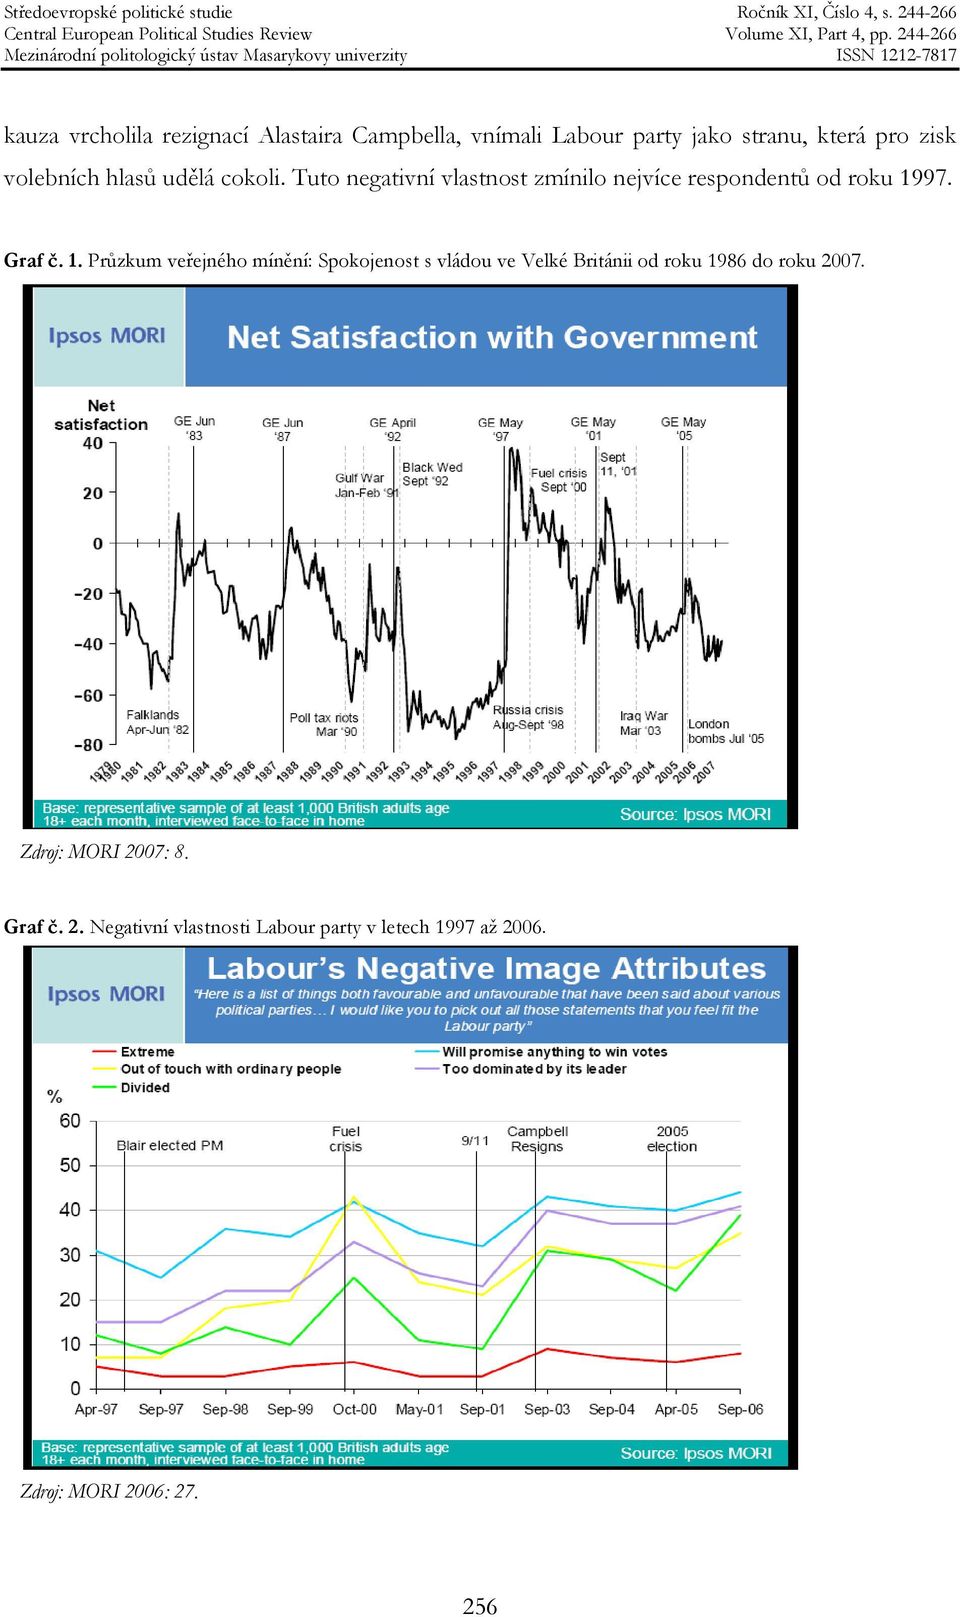 Graf č. 1. Průzkum veřejného mínění: Spokojenost s vládou ve Velké Británii od roku 1986 do roku 2007.